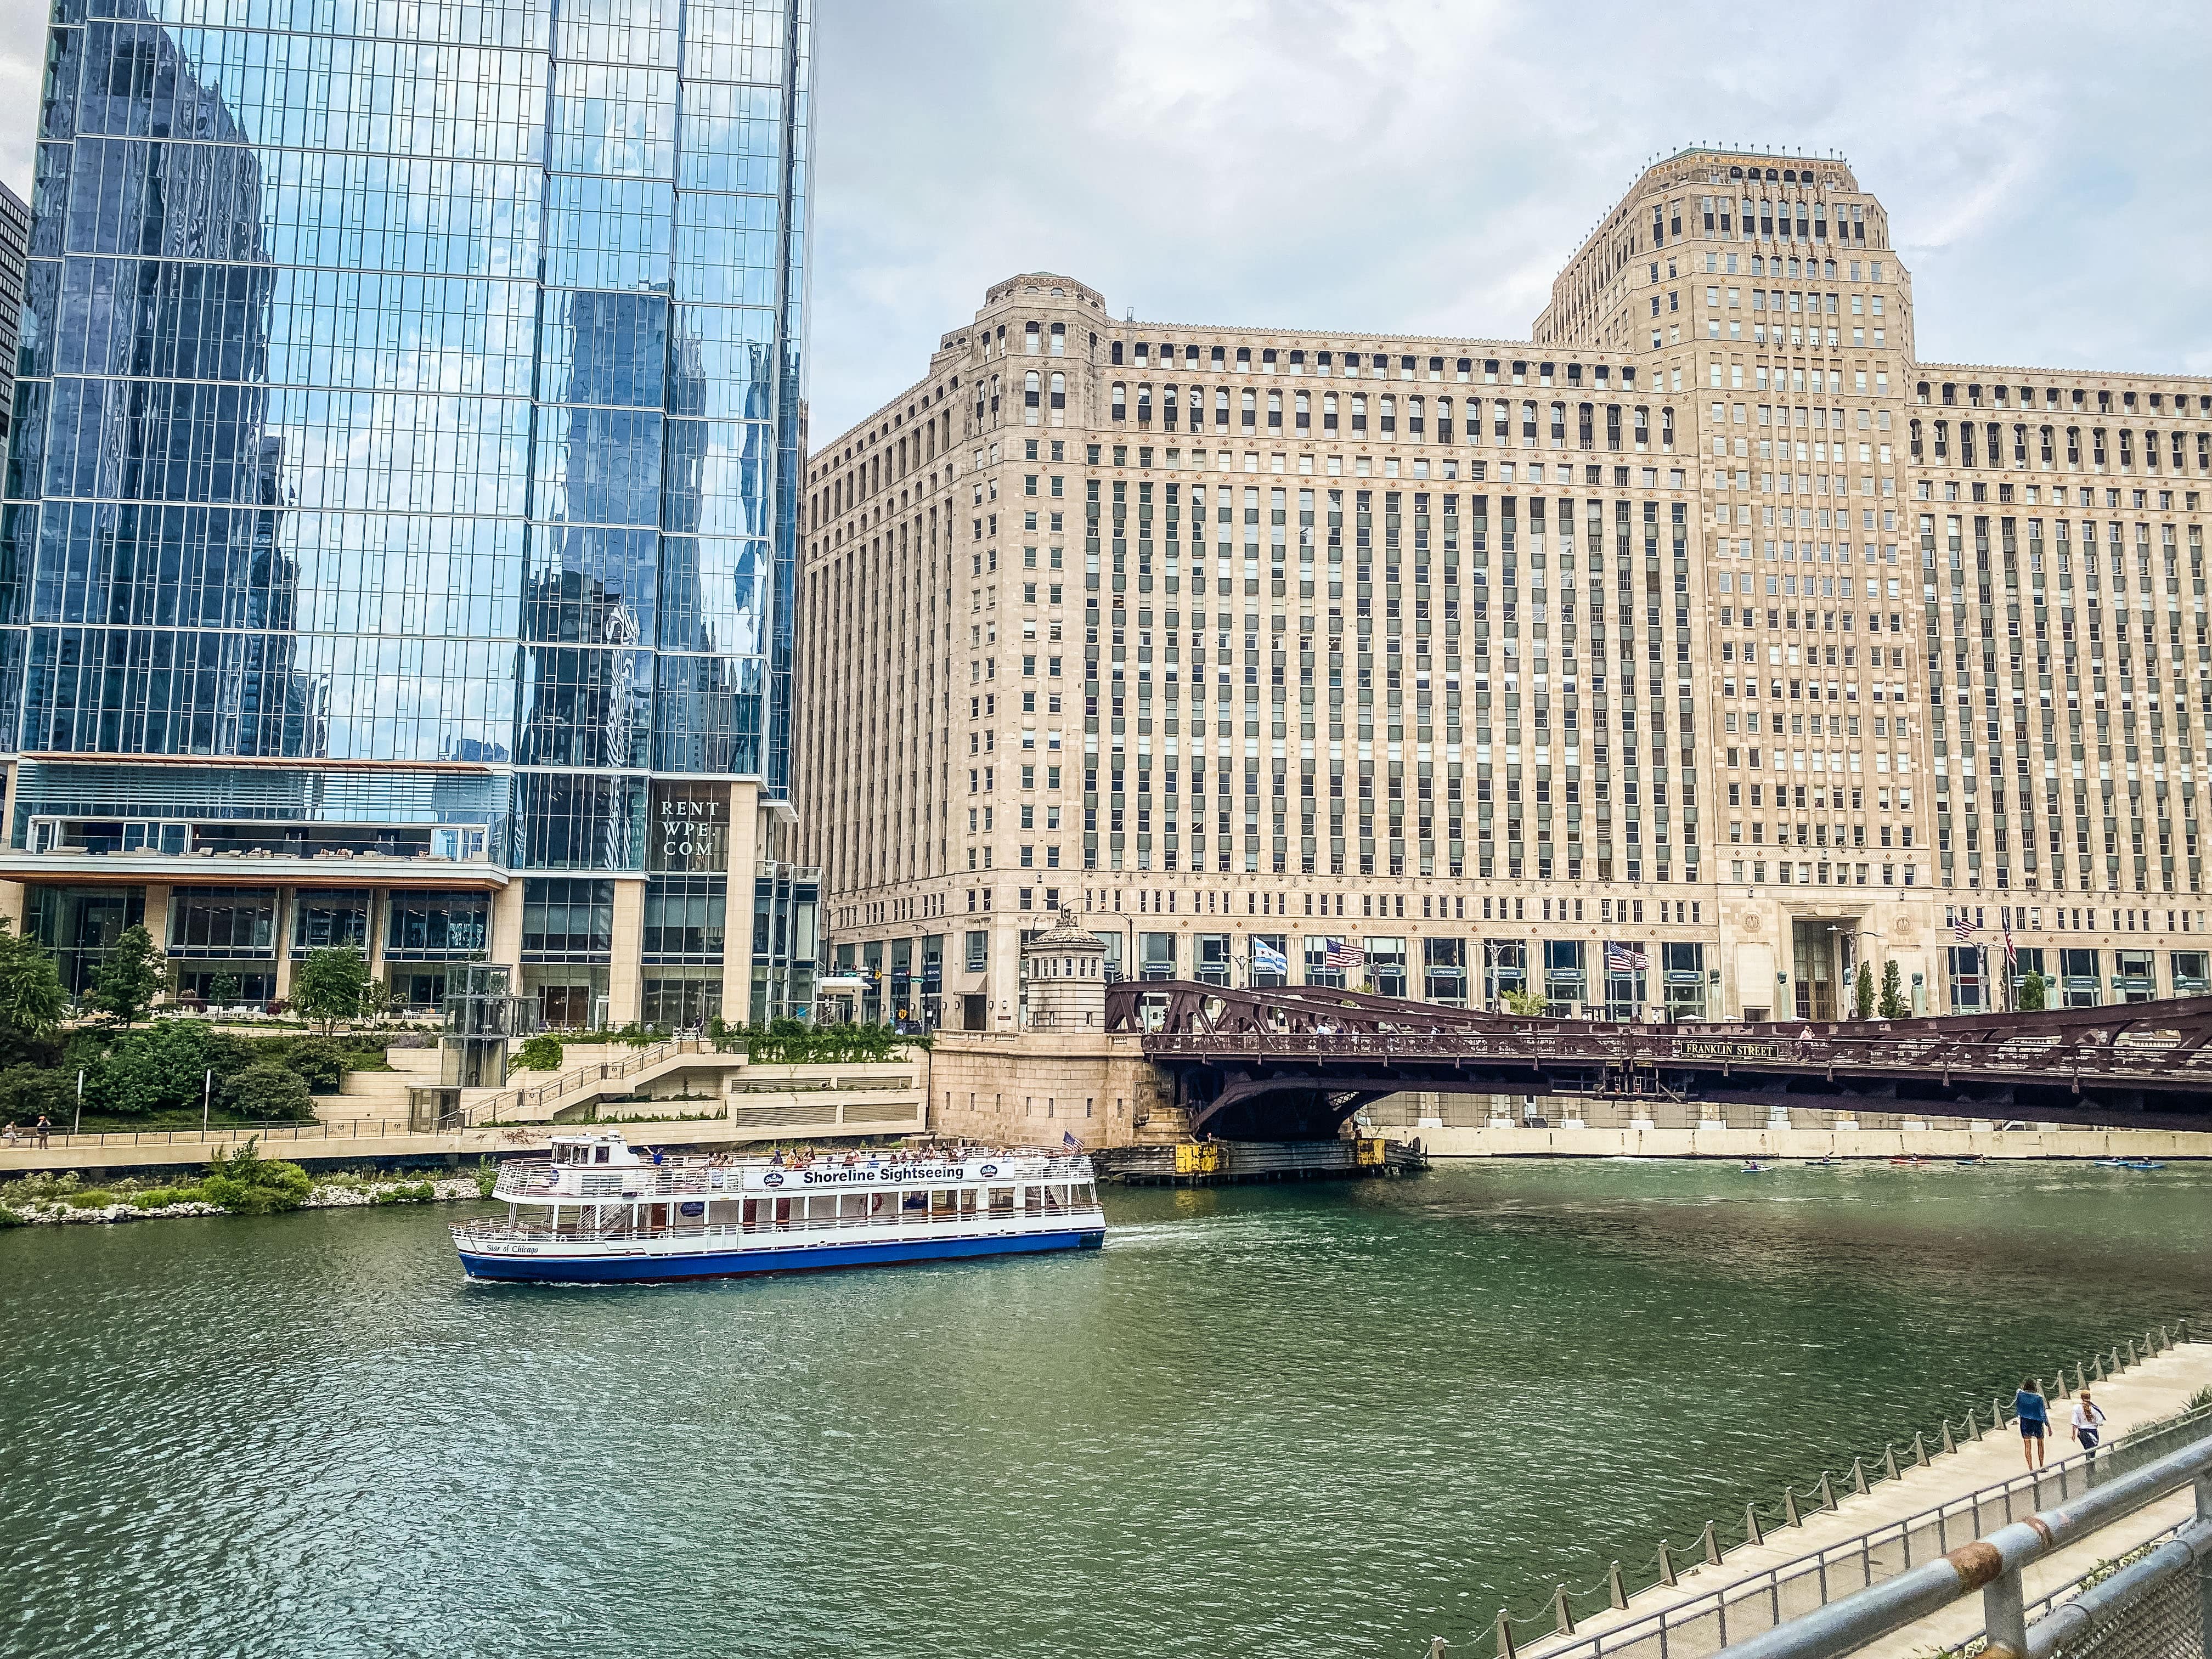 Architecture River Cruise from Michigan Avenue